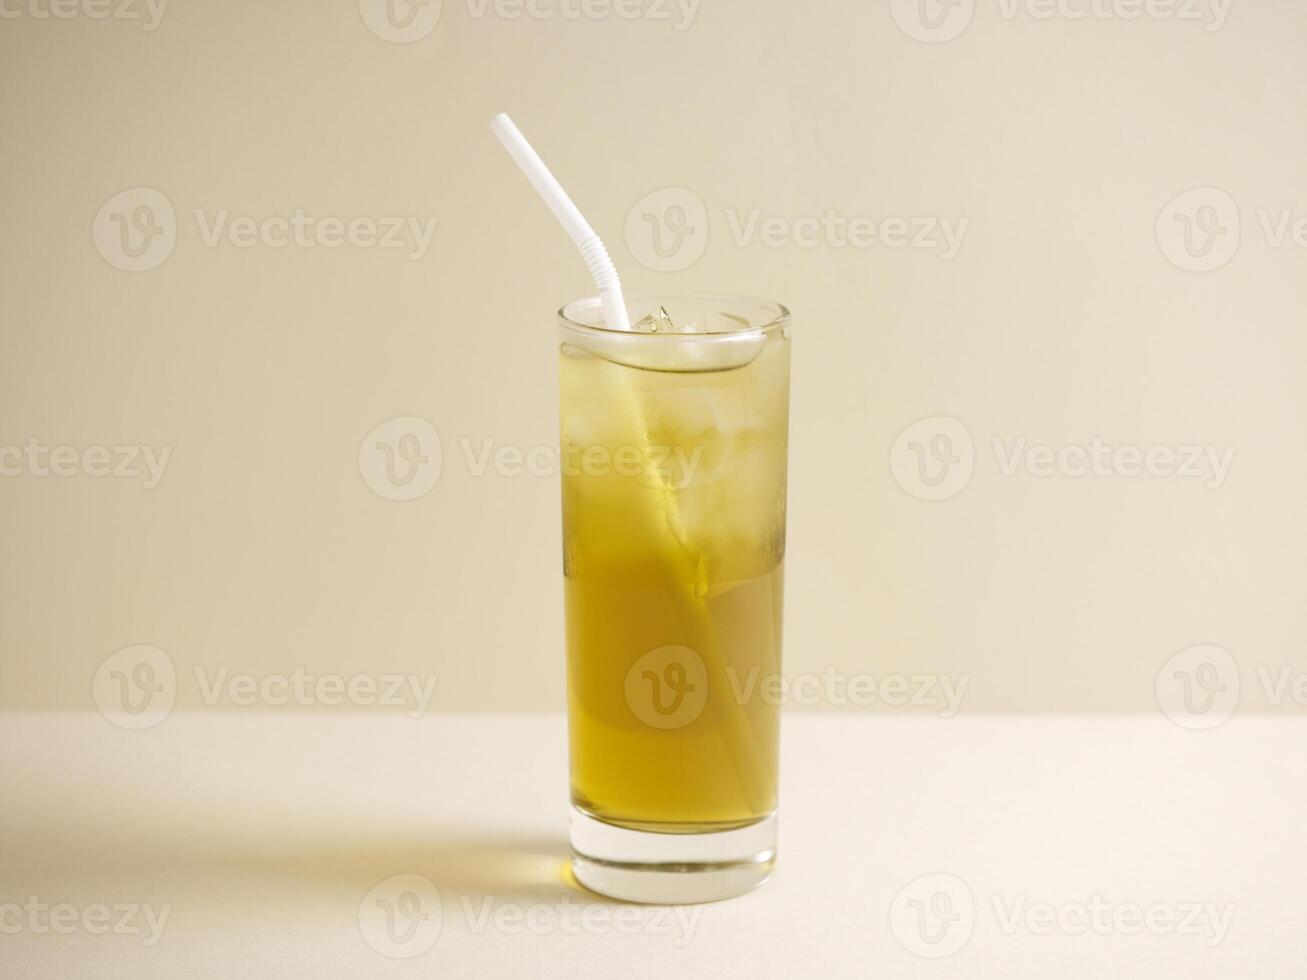 une verre de cresson mon chéri citron boisson avec paille isolé sur gris Contexte côté vue photo